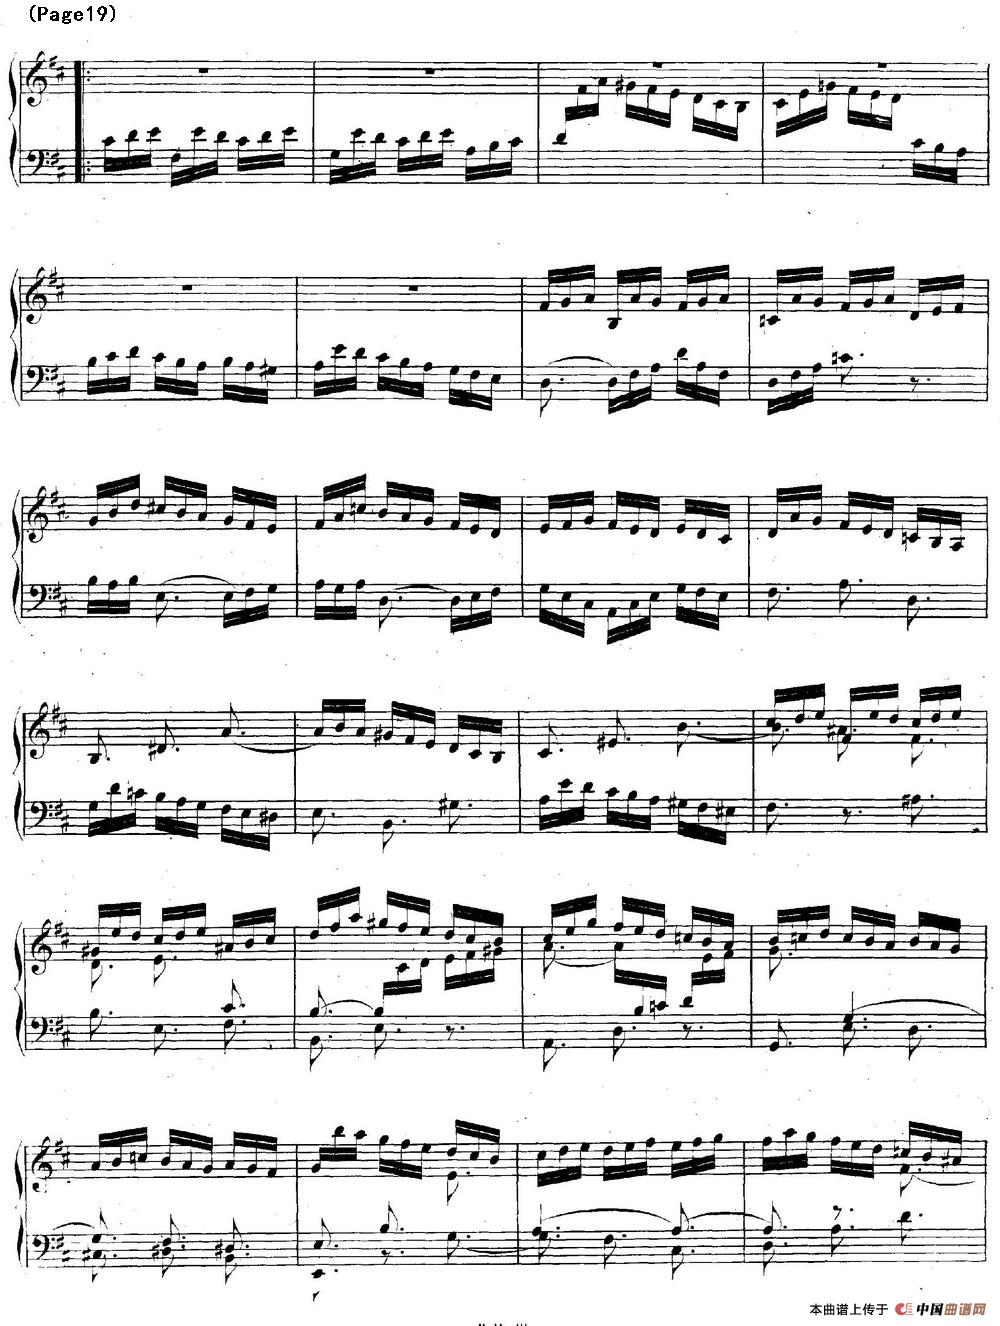 帕蒂塔6首德国组曲（No.4 D大调 巴赫 Partita D Major BWV 828）(1)_BWV0828_页面_19.jpg